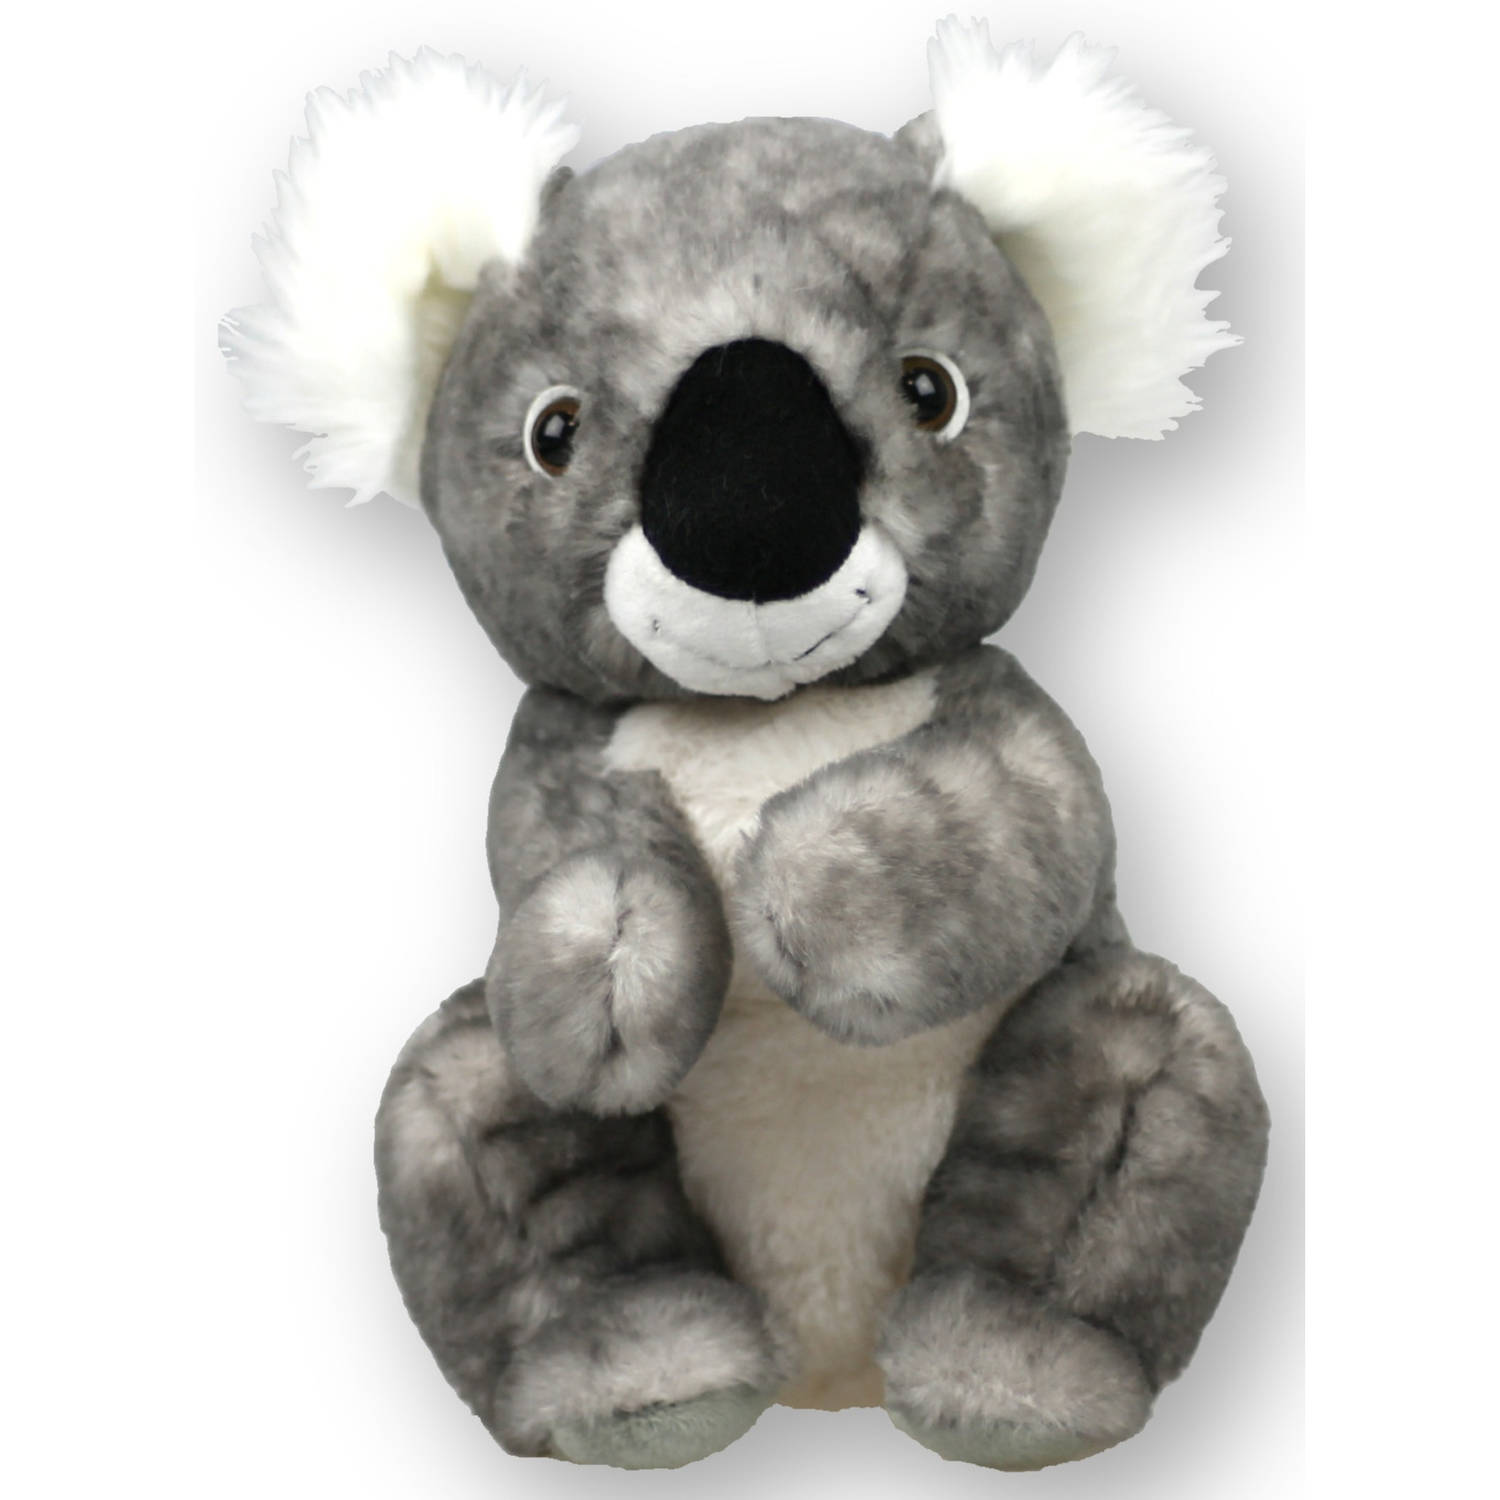 Inware pluche koala beer knuffeldier grijs zittend 22 cm Knuffel boederijdieren